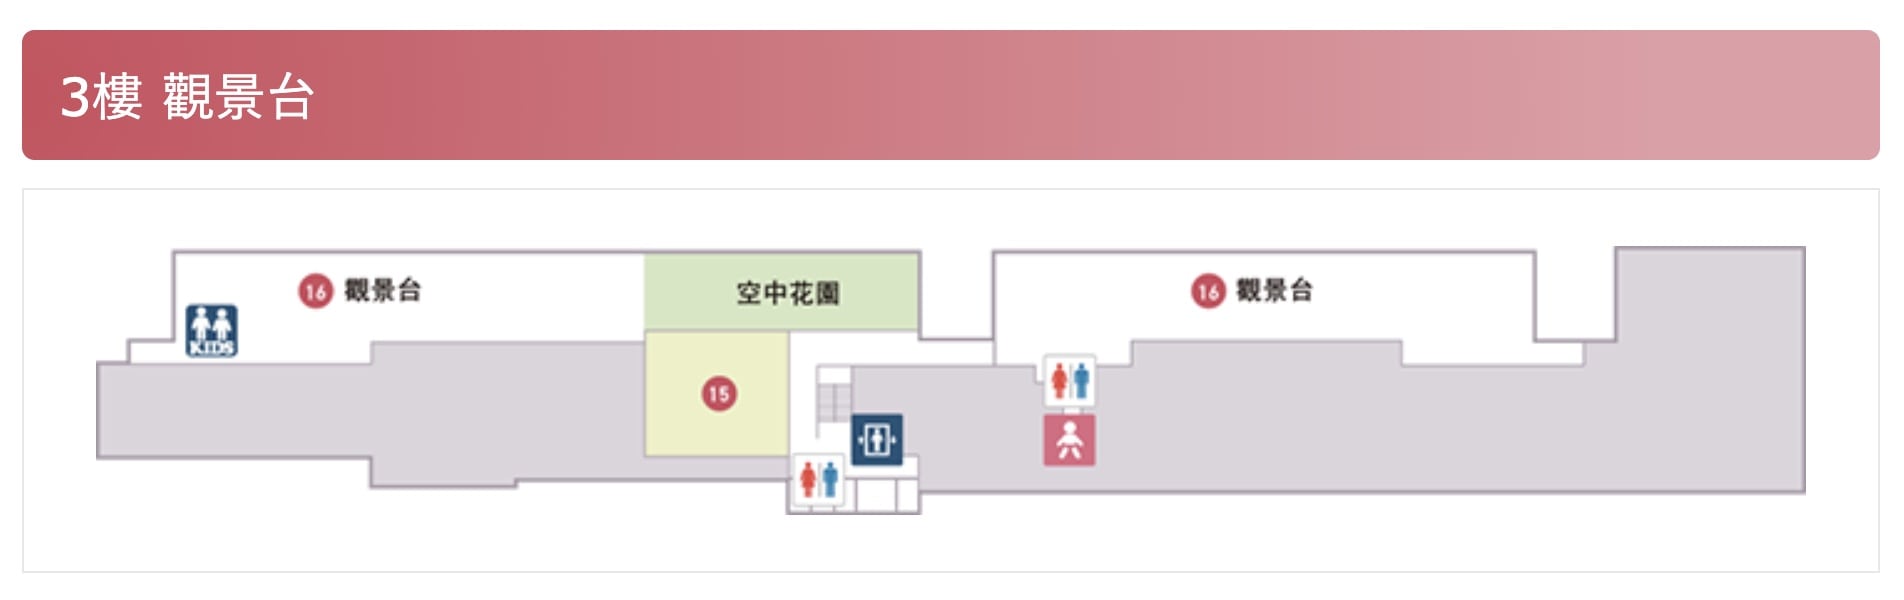 岡山機場出入境流程、岡山機場交通、岡山機場免稅店、餐廳